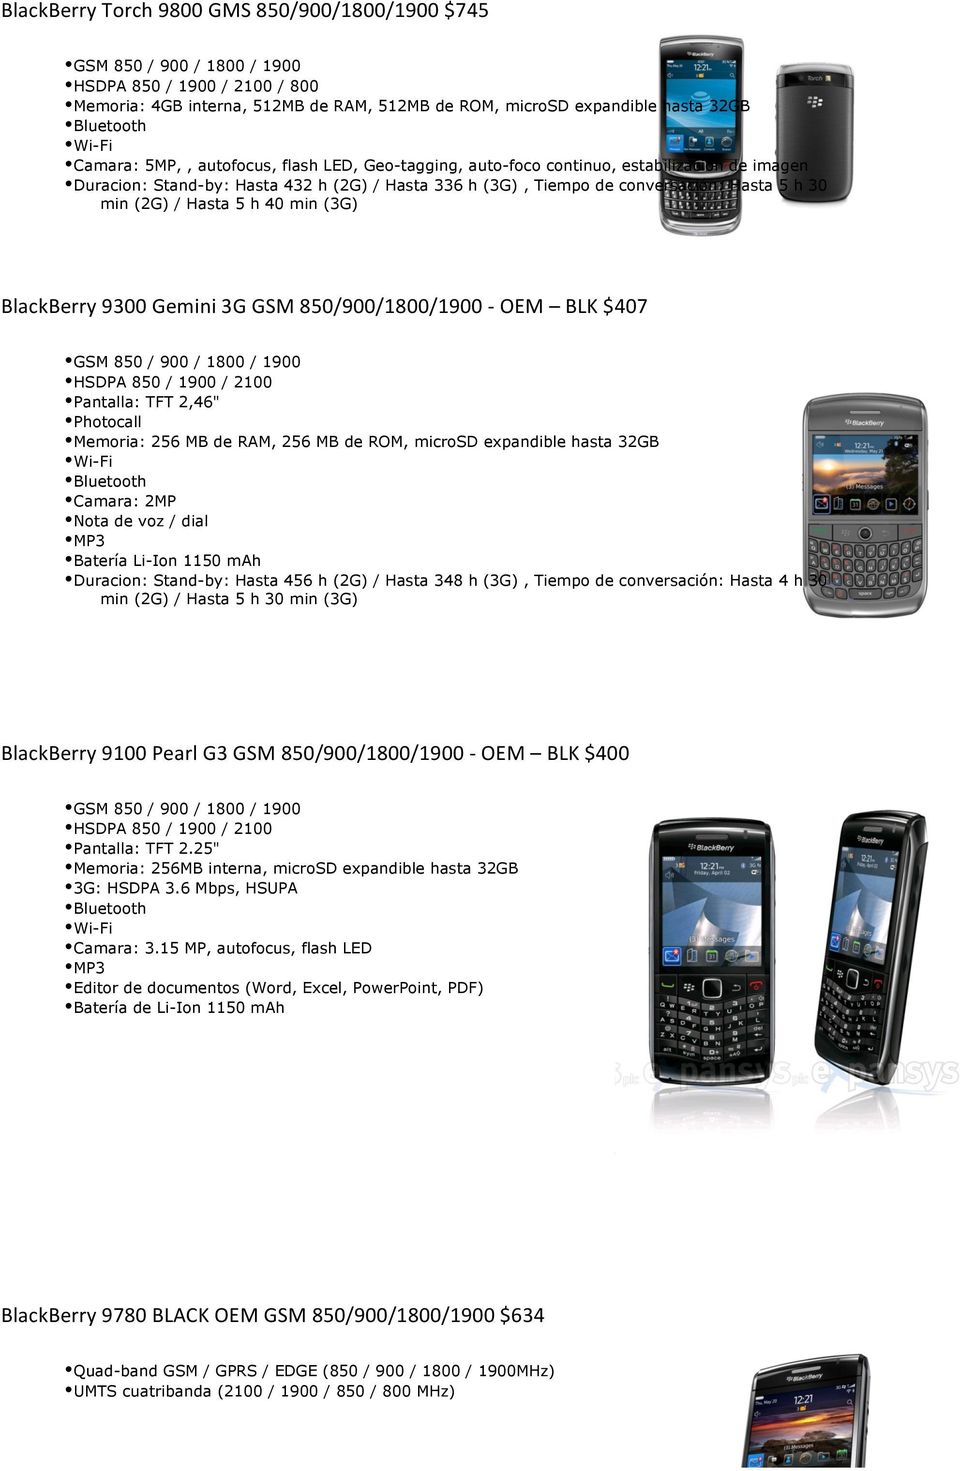 9300 Gemini 3G GSM 850/900/1800/1900 - OEM BLK $407 HSDPA 850 / 1900 / 2100 Pantalla: TFT 2,46" Photocall Memoria: 256 MB de RAM, 256 MB de ROM, microsd expandible hasta 32GB Camara: 2MP Nota de voz